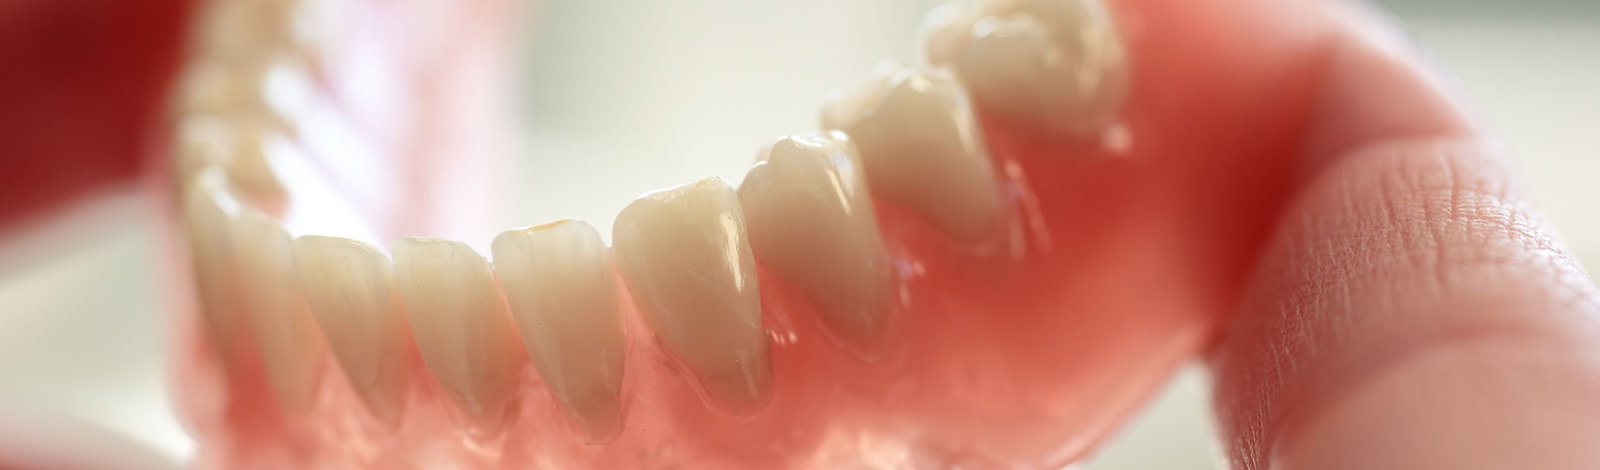 Prothèses dentaires partielles et complètes amovibles